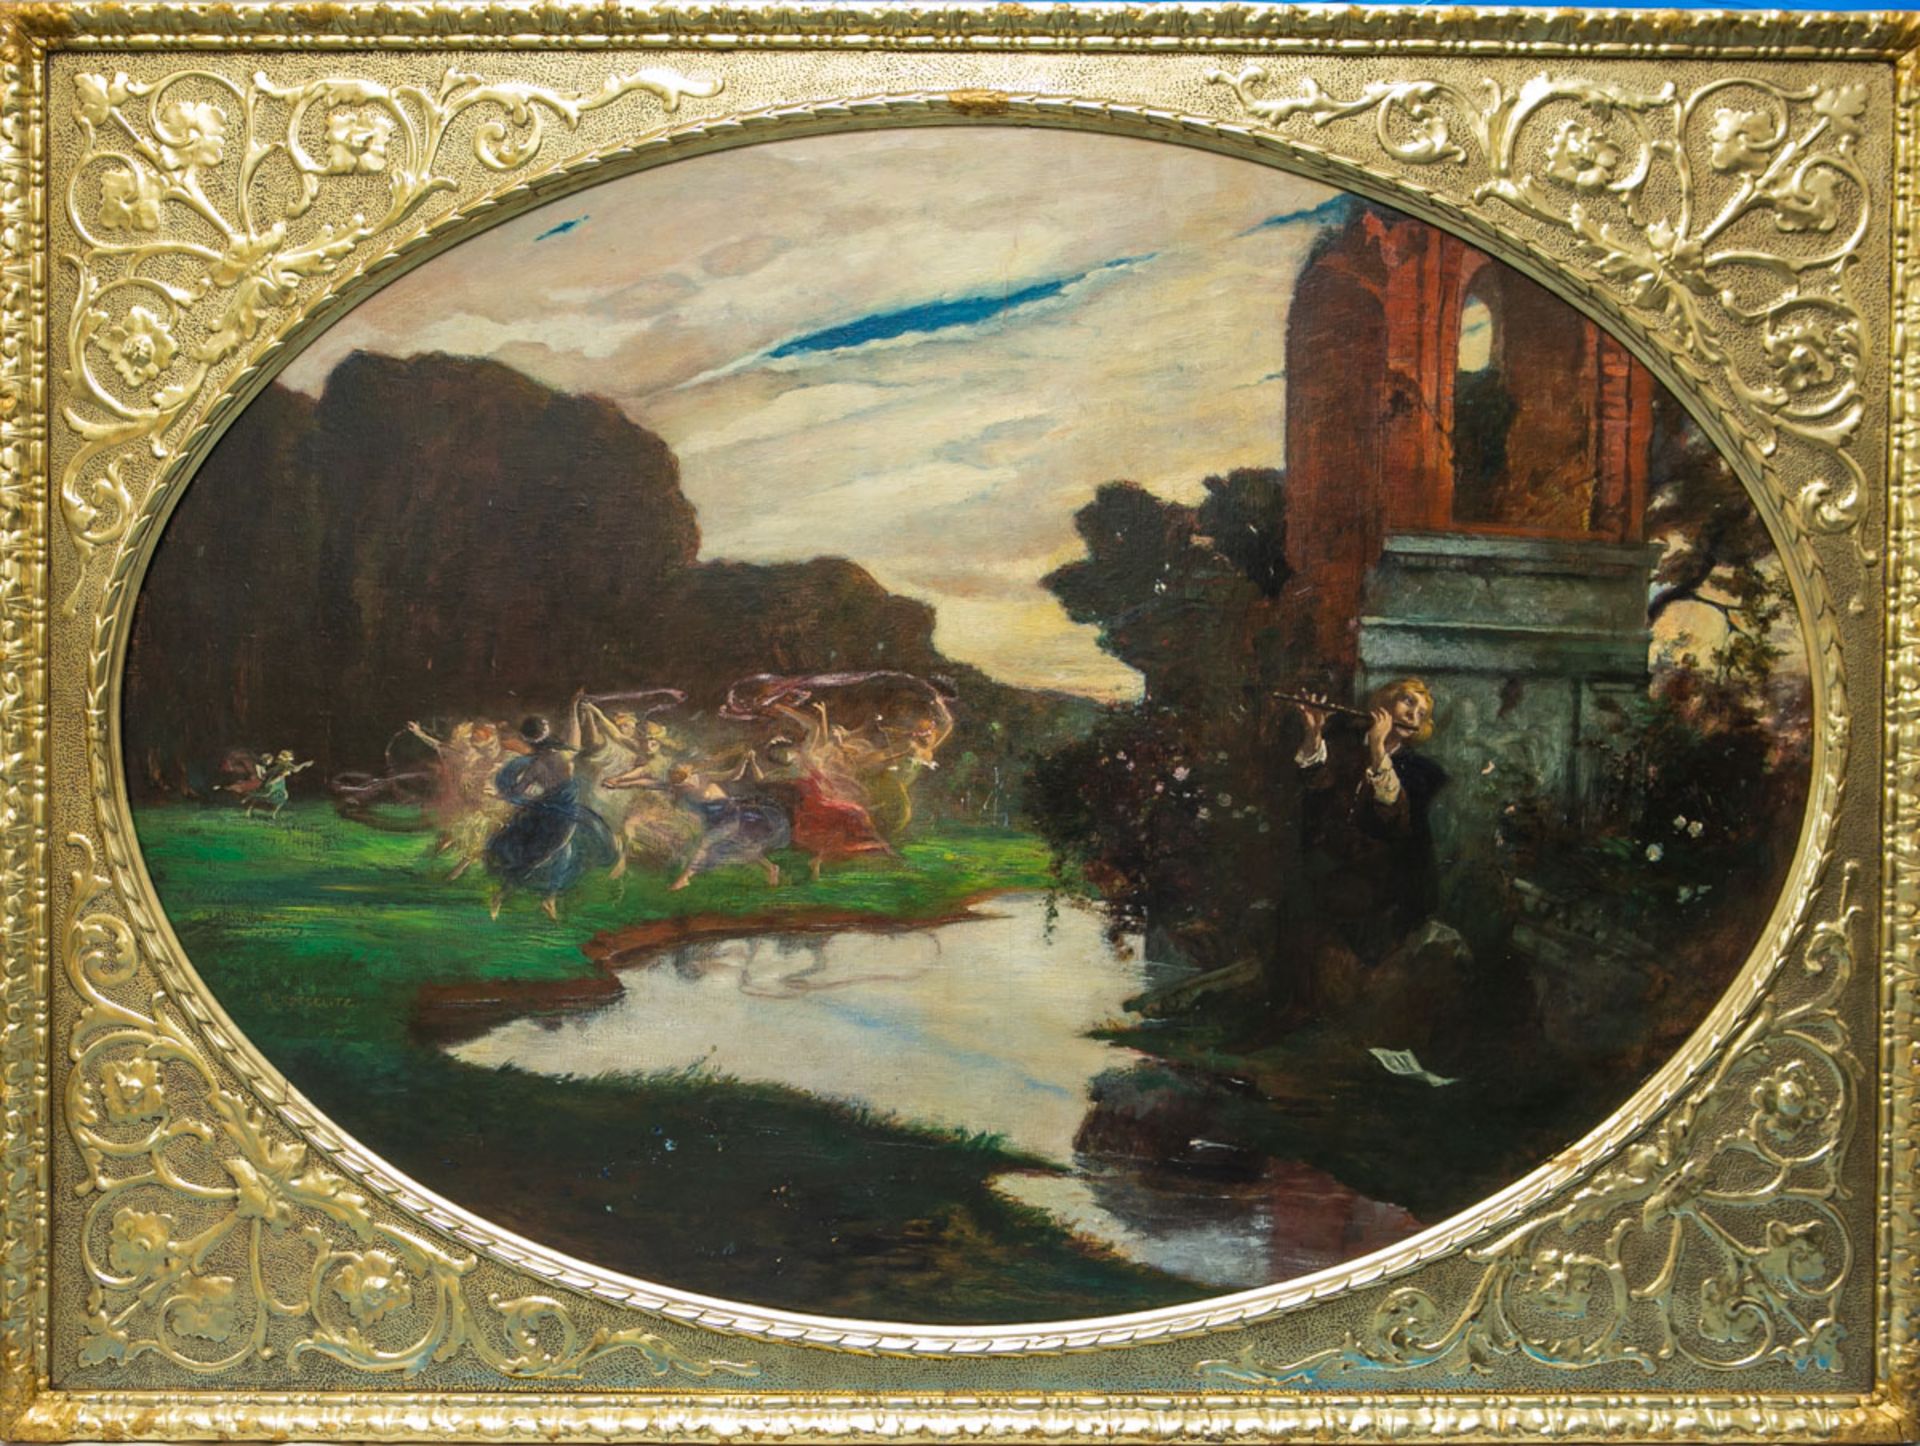 Köselitz, Rudolf (1861-1949), Najadentanz an einem Flußlauf mit Querflöte spielendem Jüngling